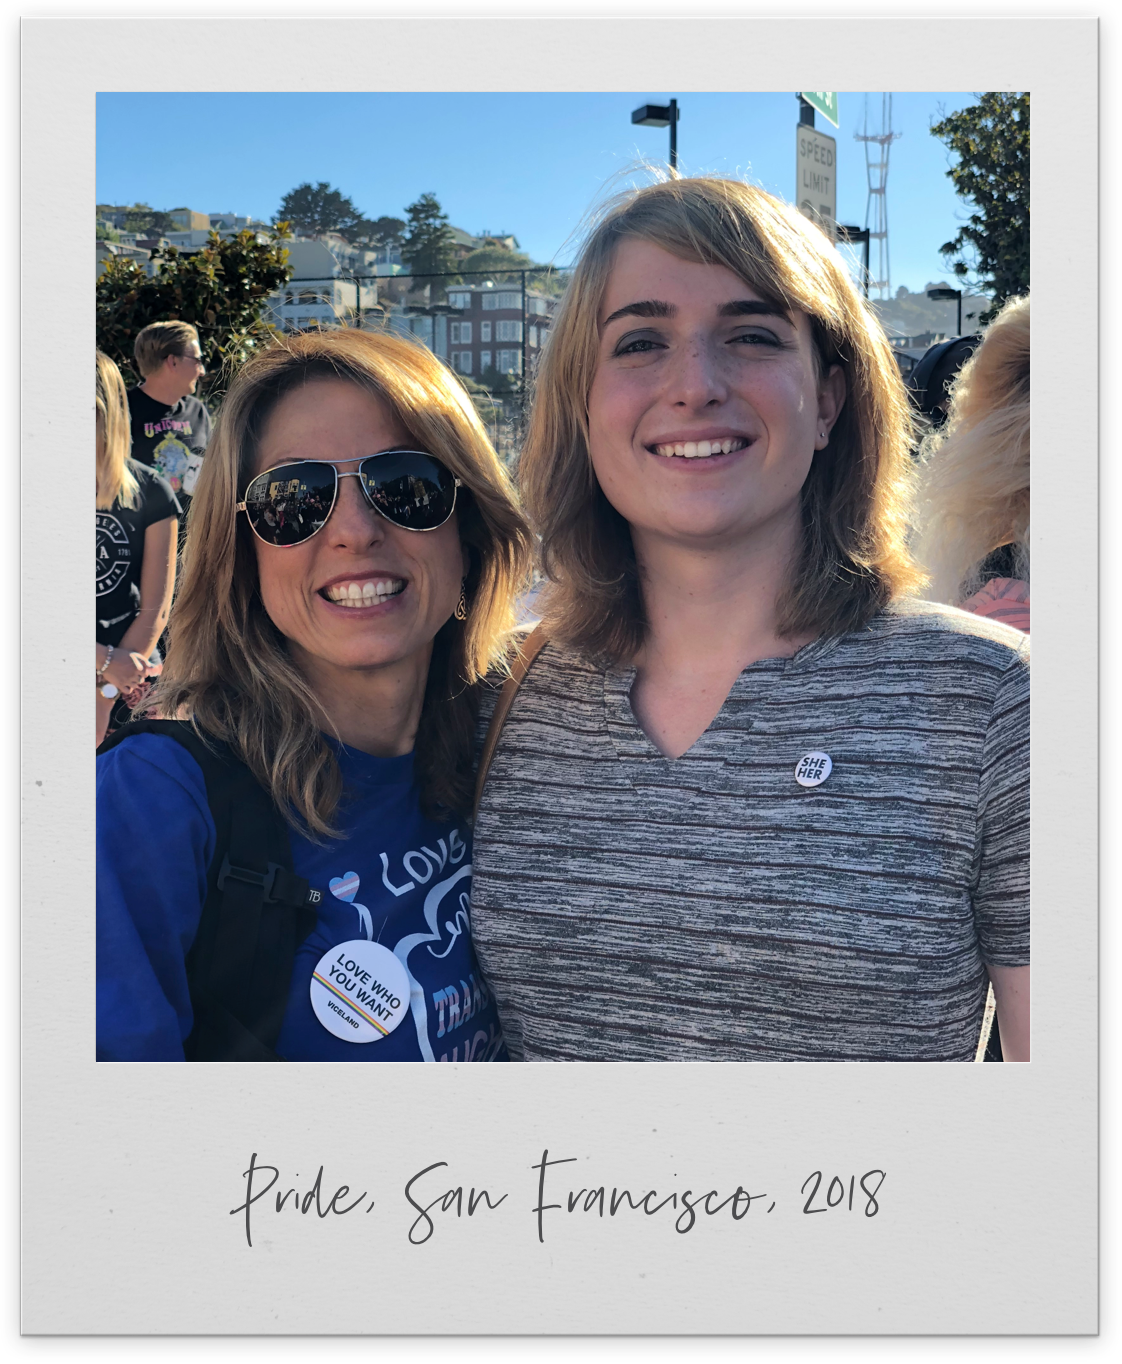 Pride San Francisco 2018